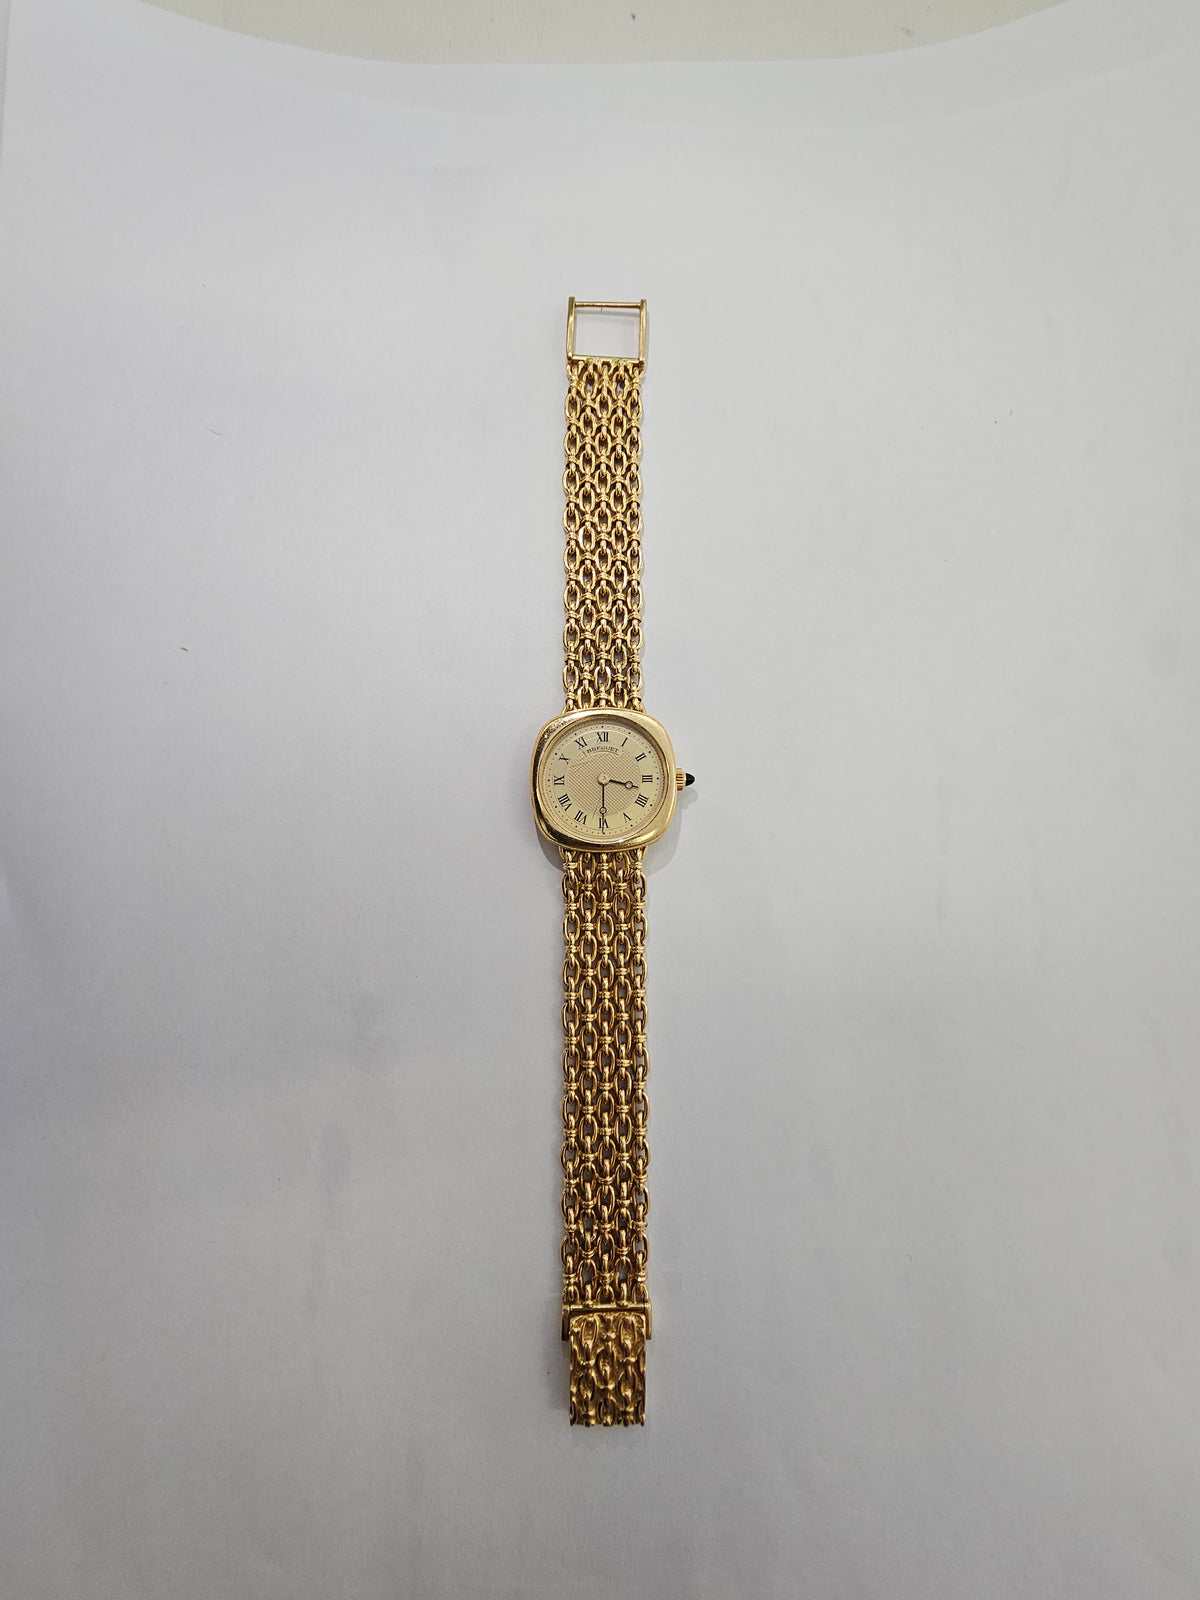 Breguet Ladies 18k Gold Watch